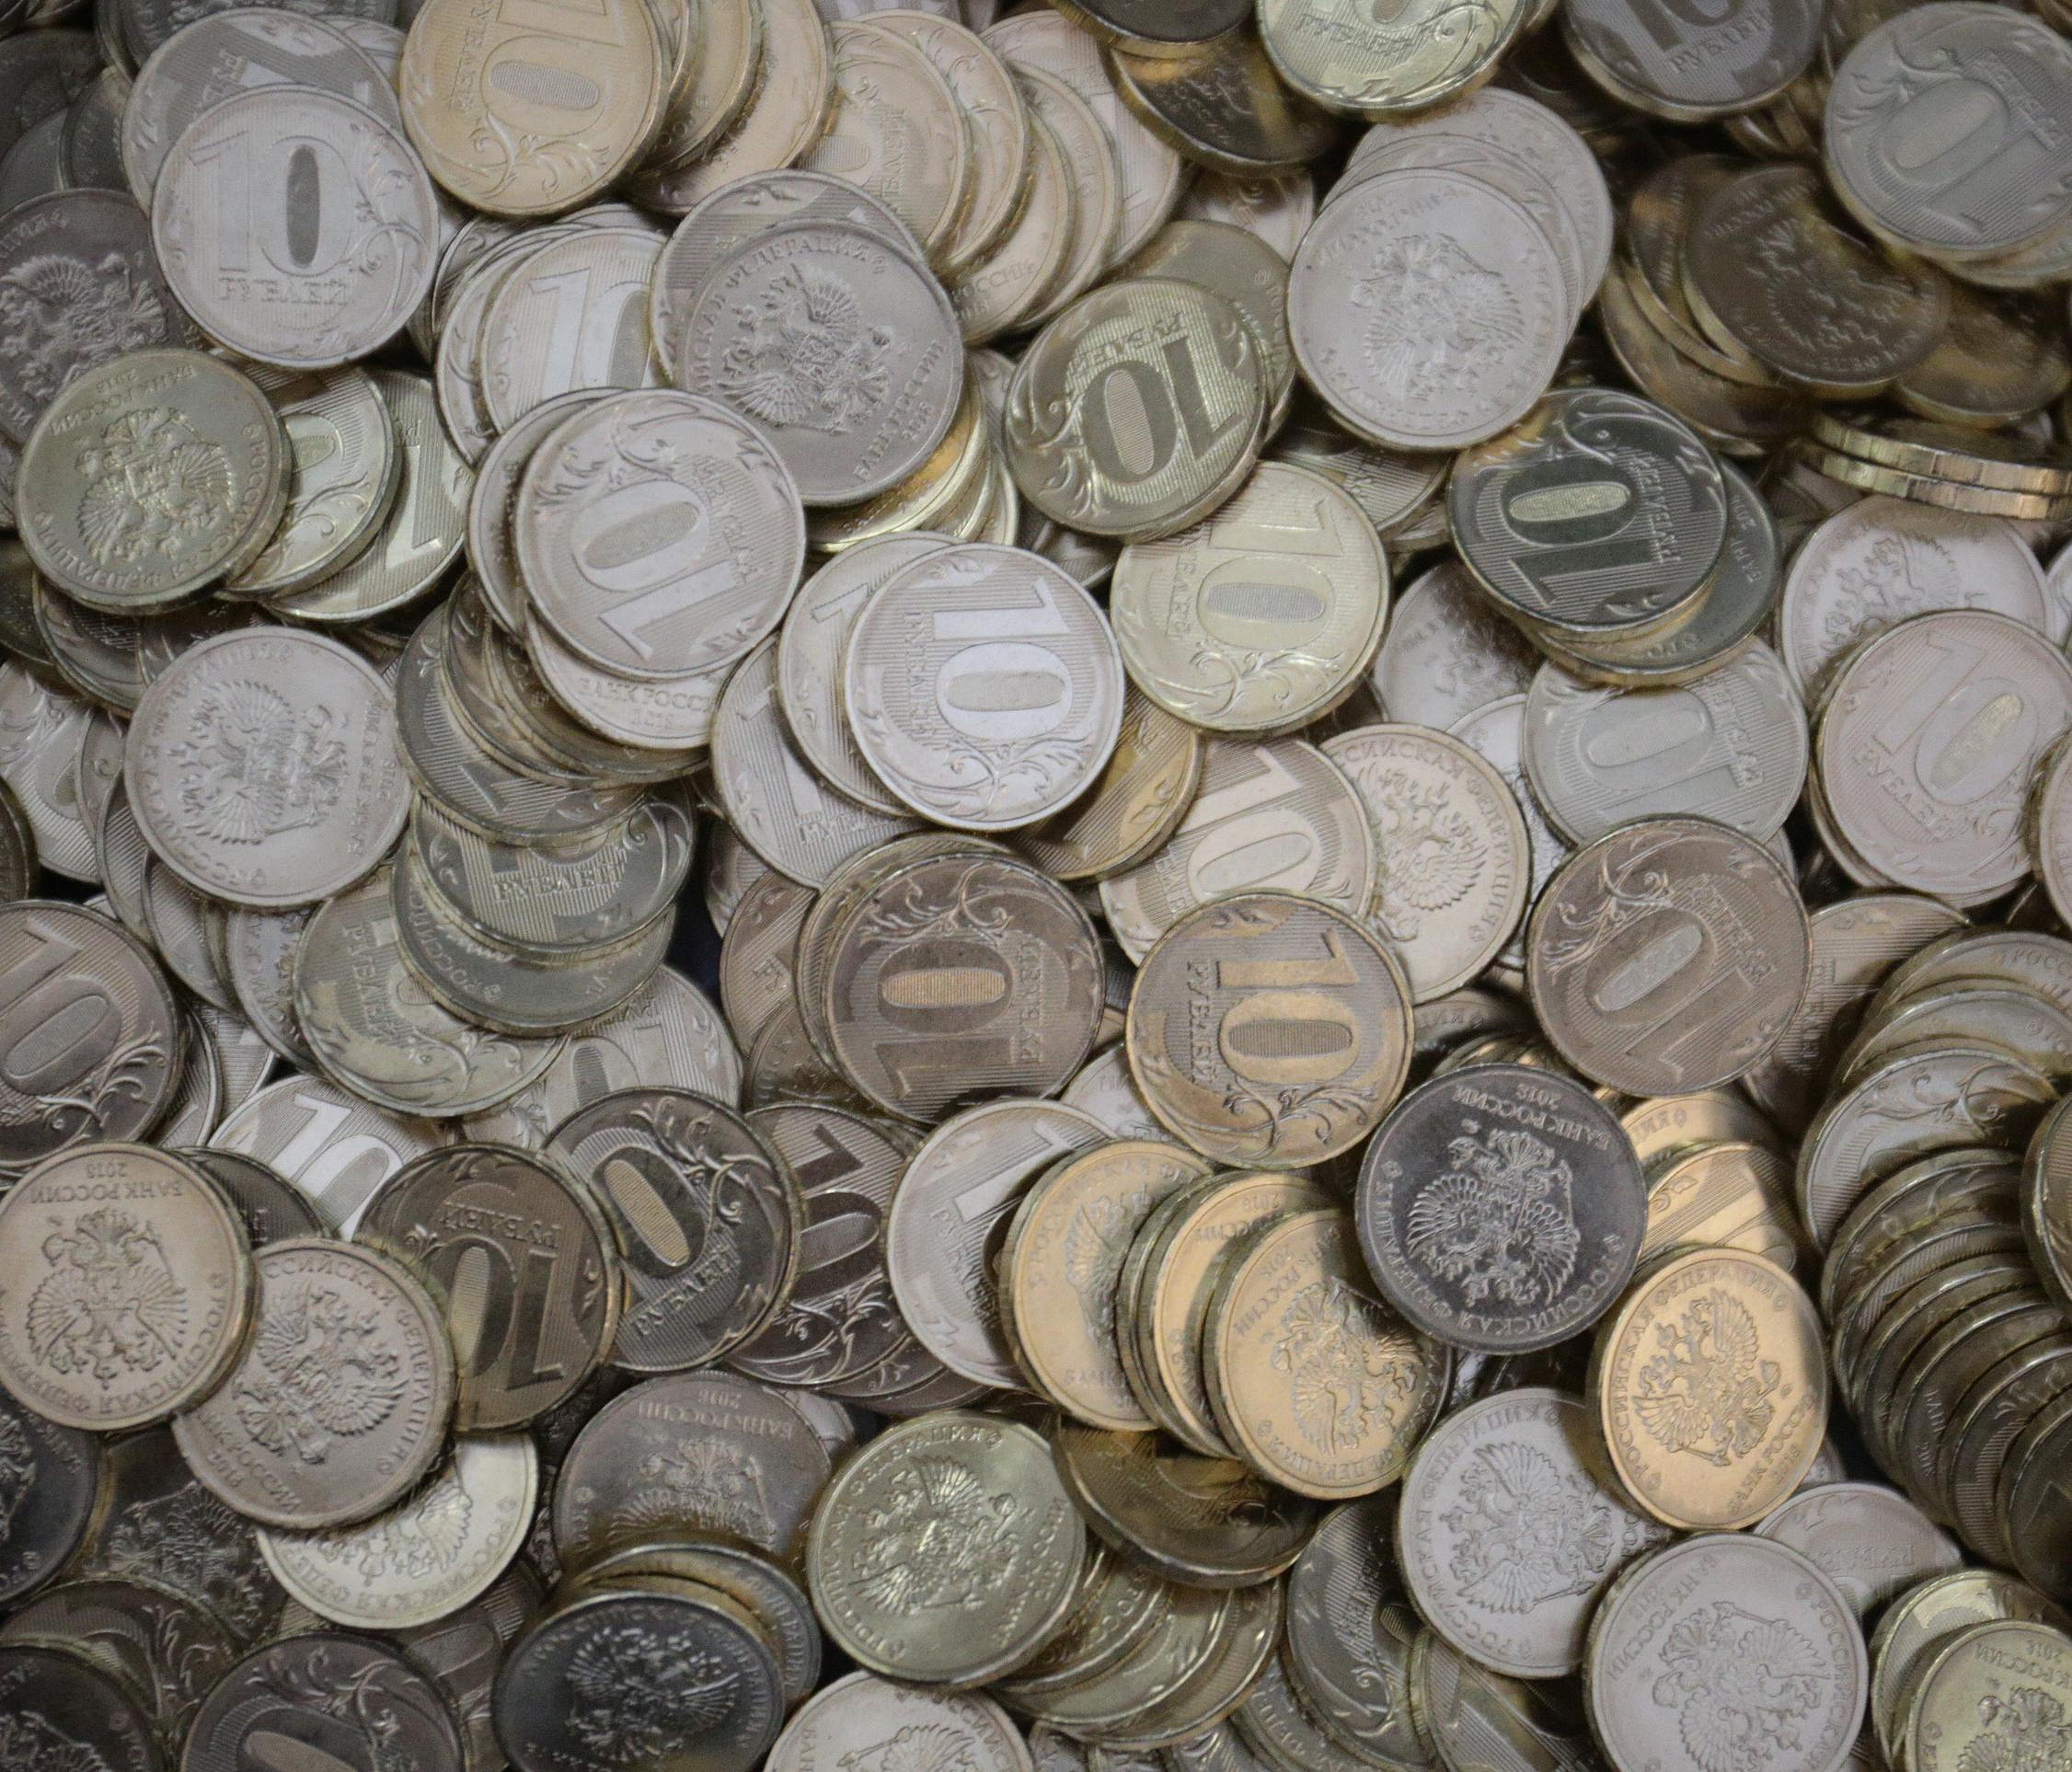 Фальшивую пятирублёвую монету обнаружили в новосибирском банке